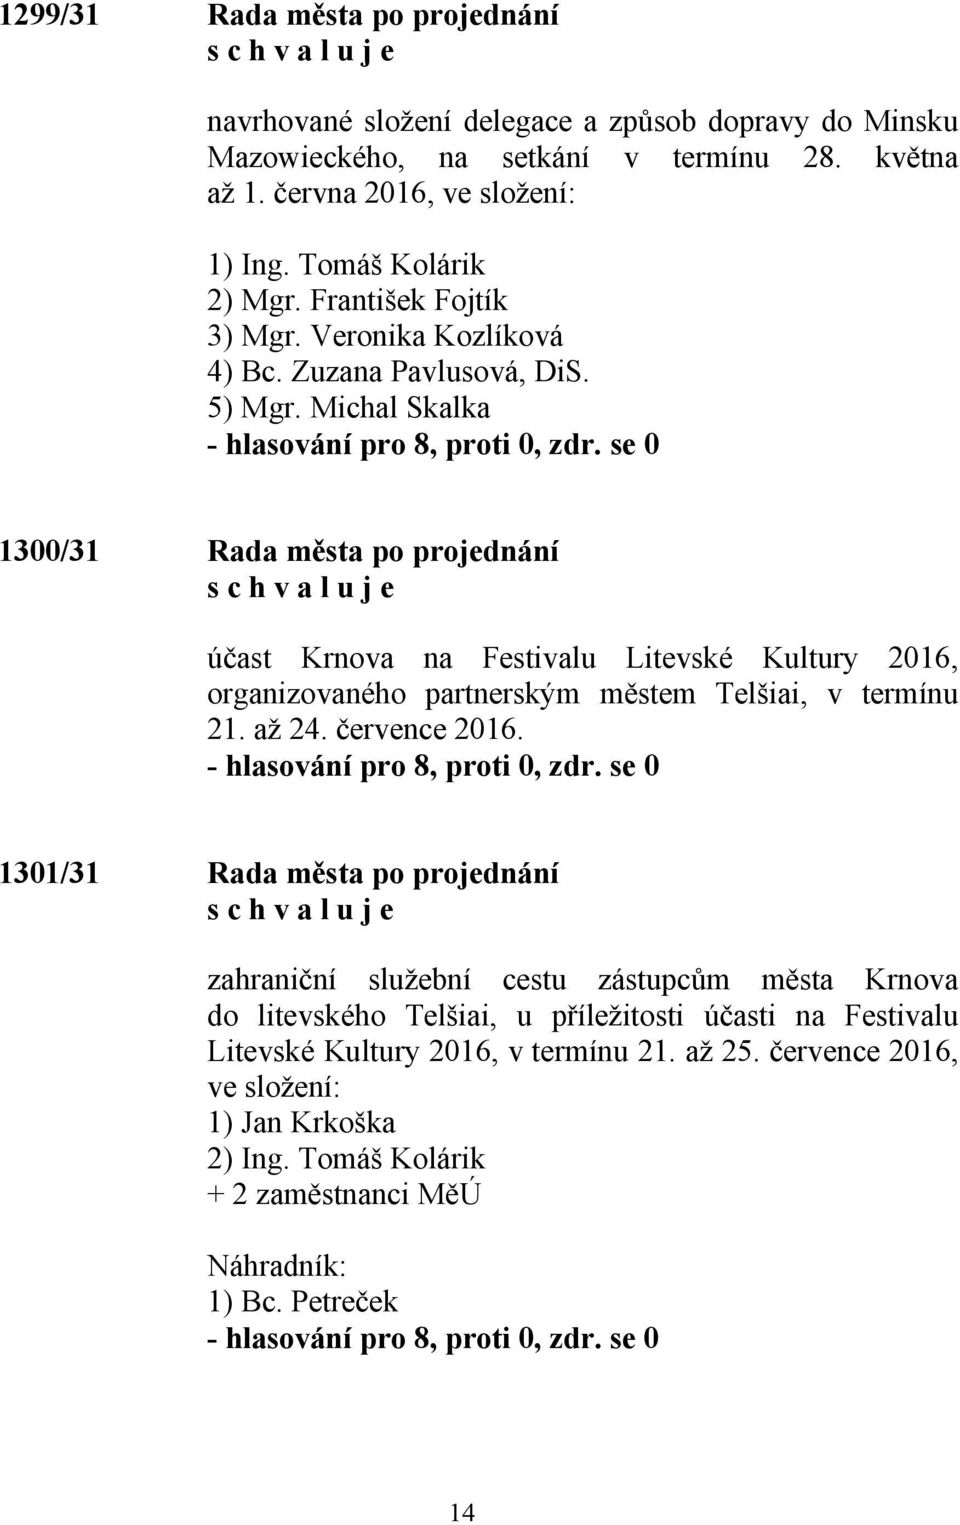 Michal Skalka 1300/31 Rada města po projednání účast Krnova na Festivalu Litevské Kultury 2016, organizovaného partnerským městem Telšiai, v termínu 21. až 24. července 2016.